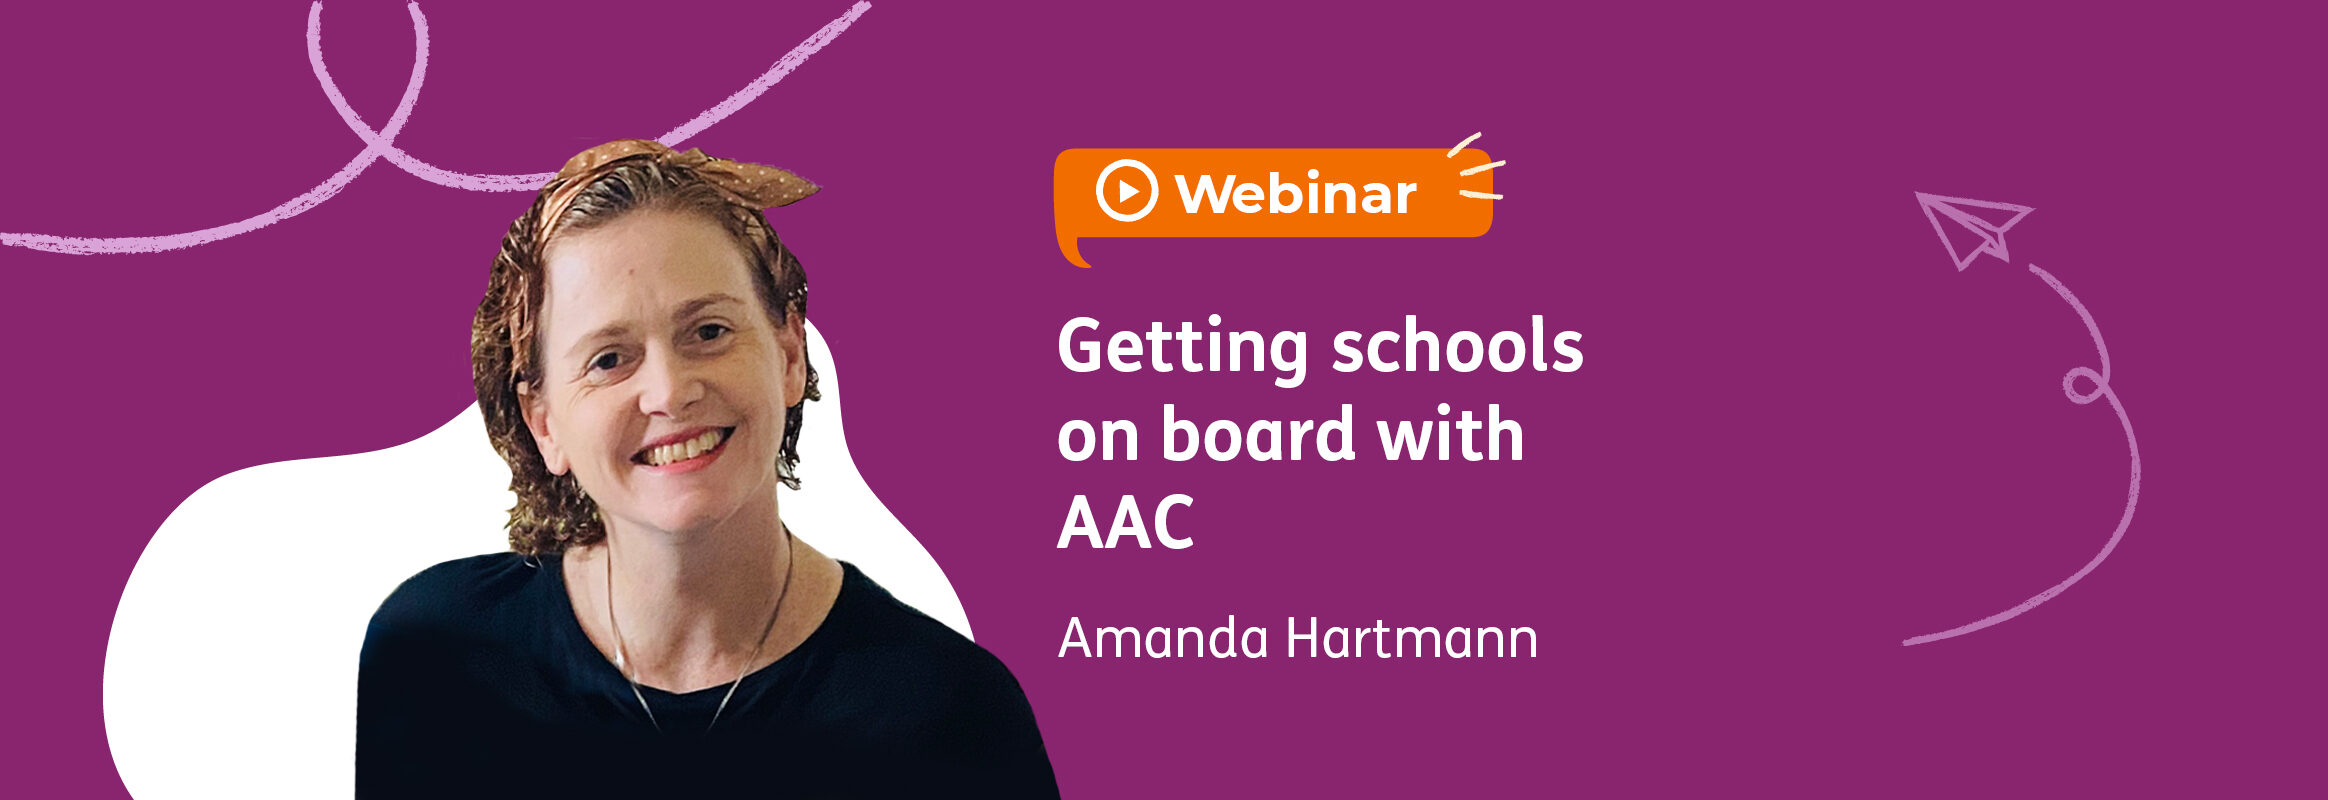 Webinar: Getting schools on board with AAC